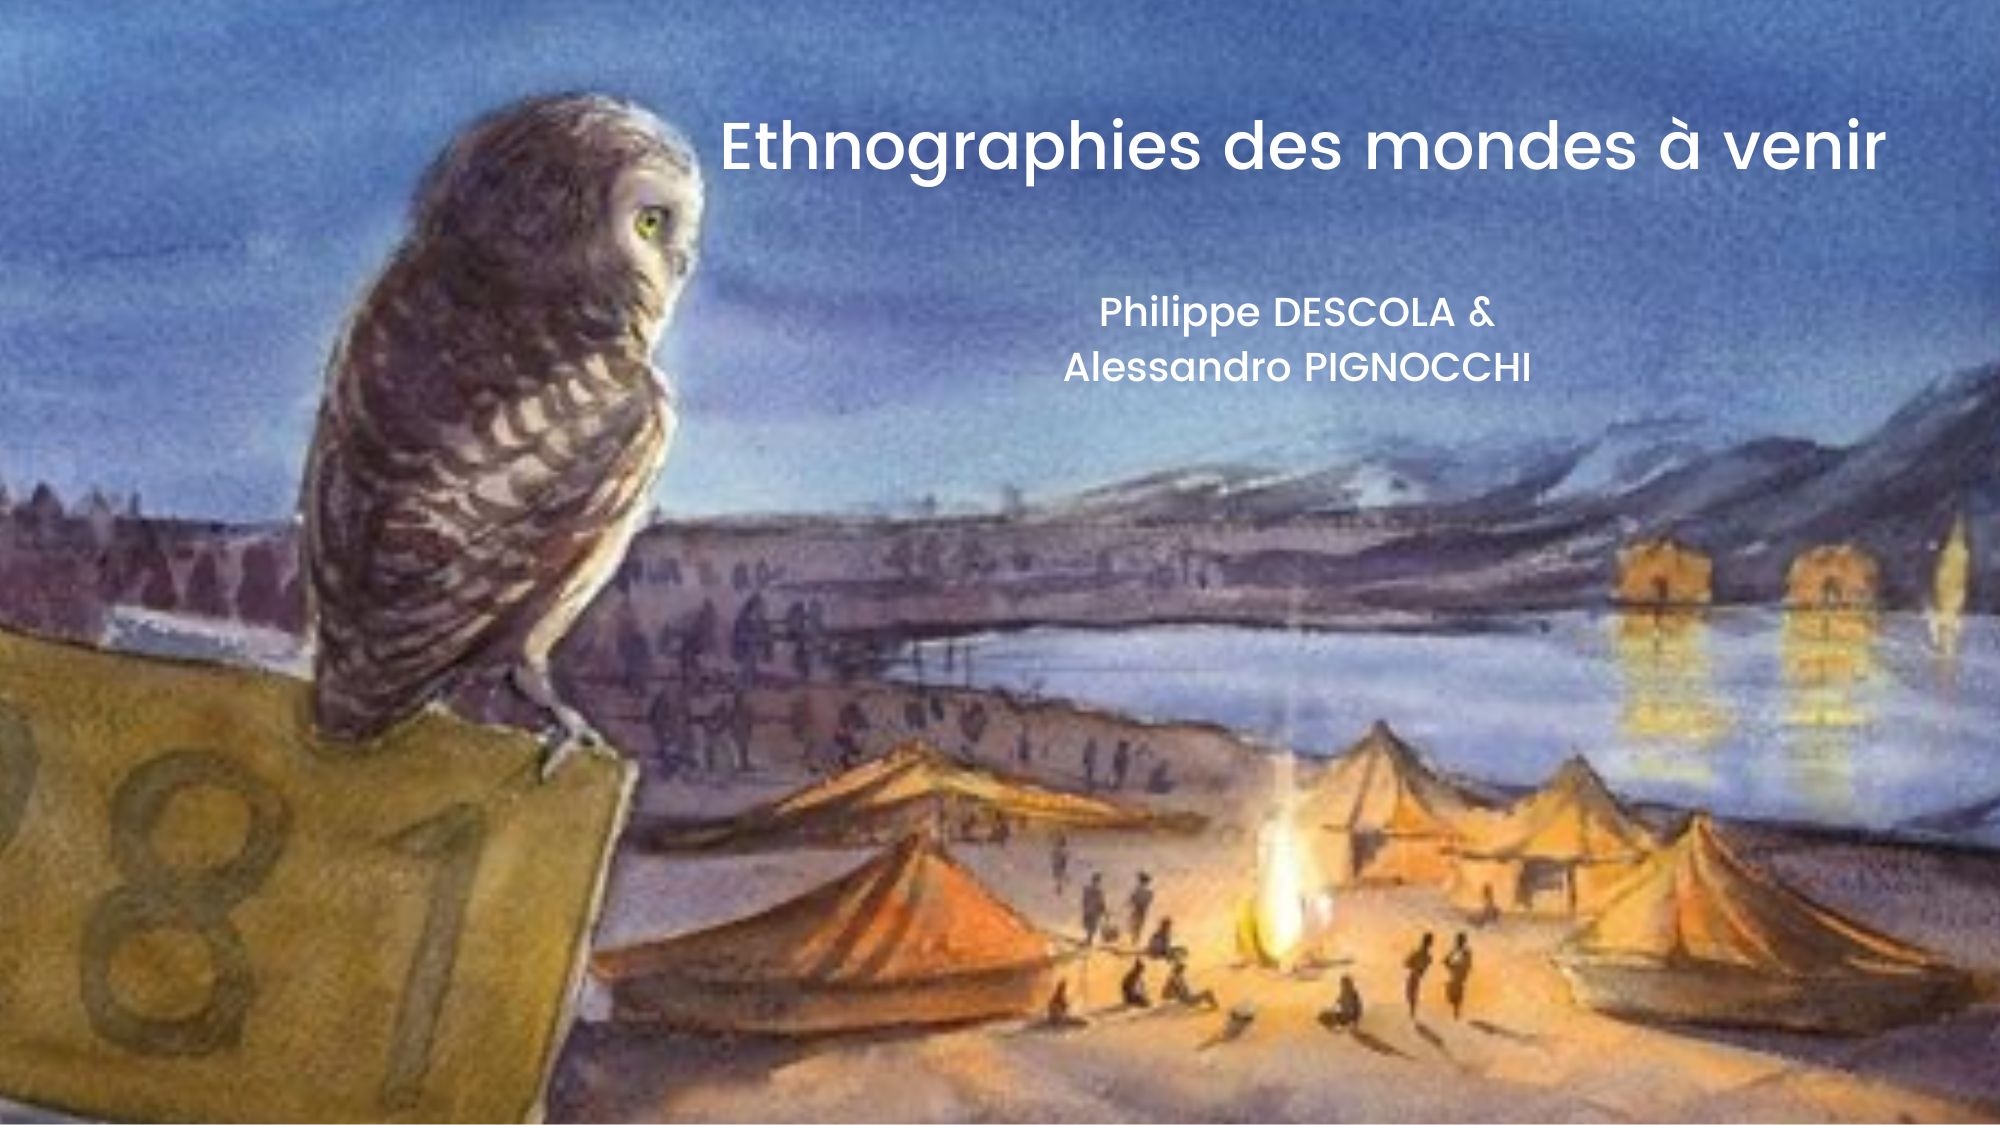 photo de couverture du livre "ethnographies des mondes à venir"